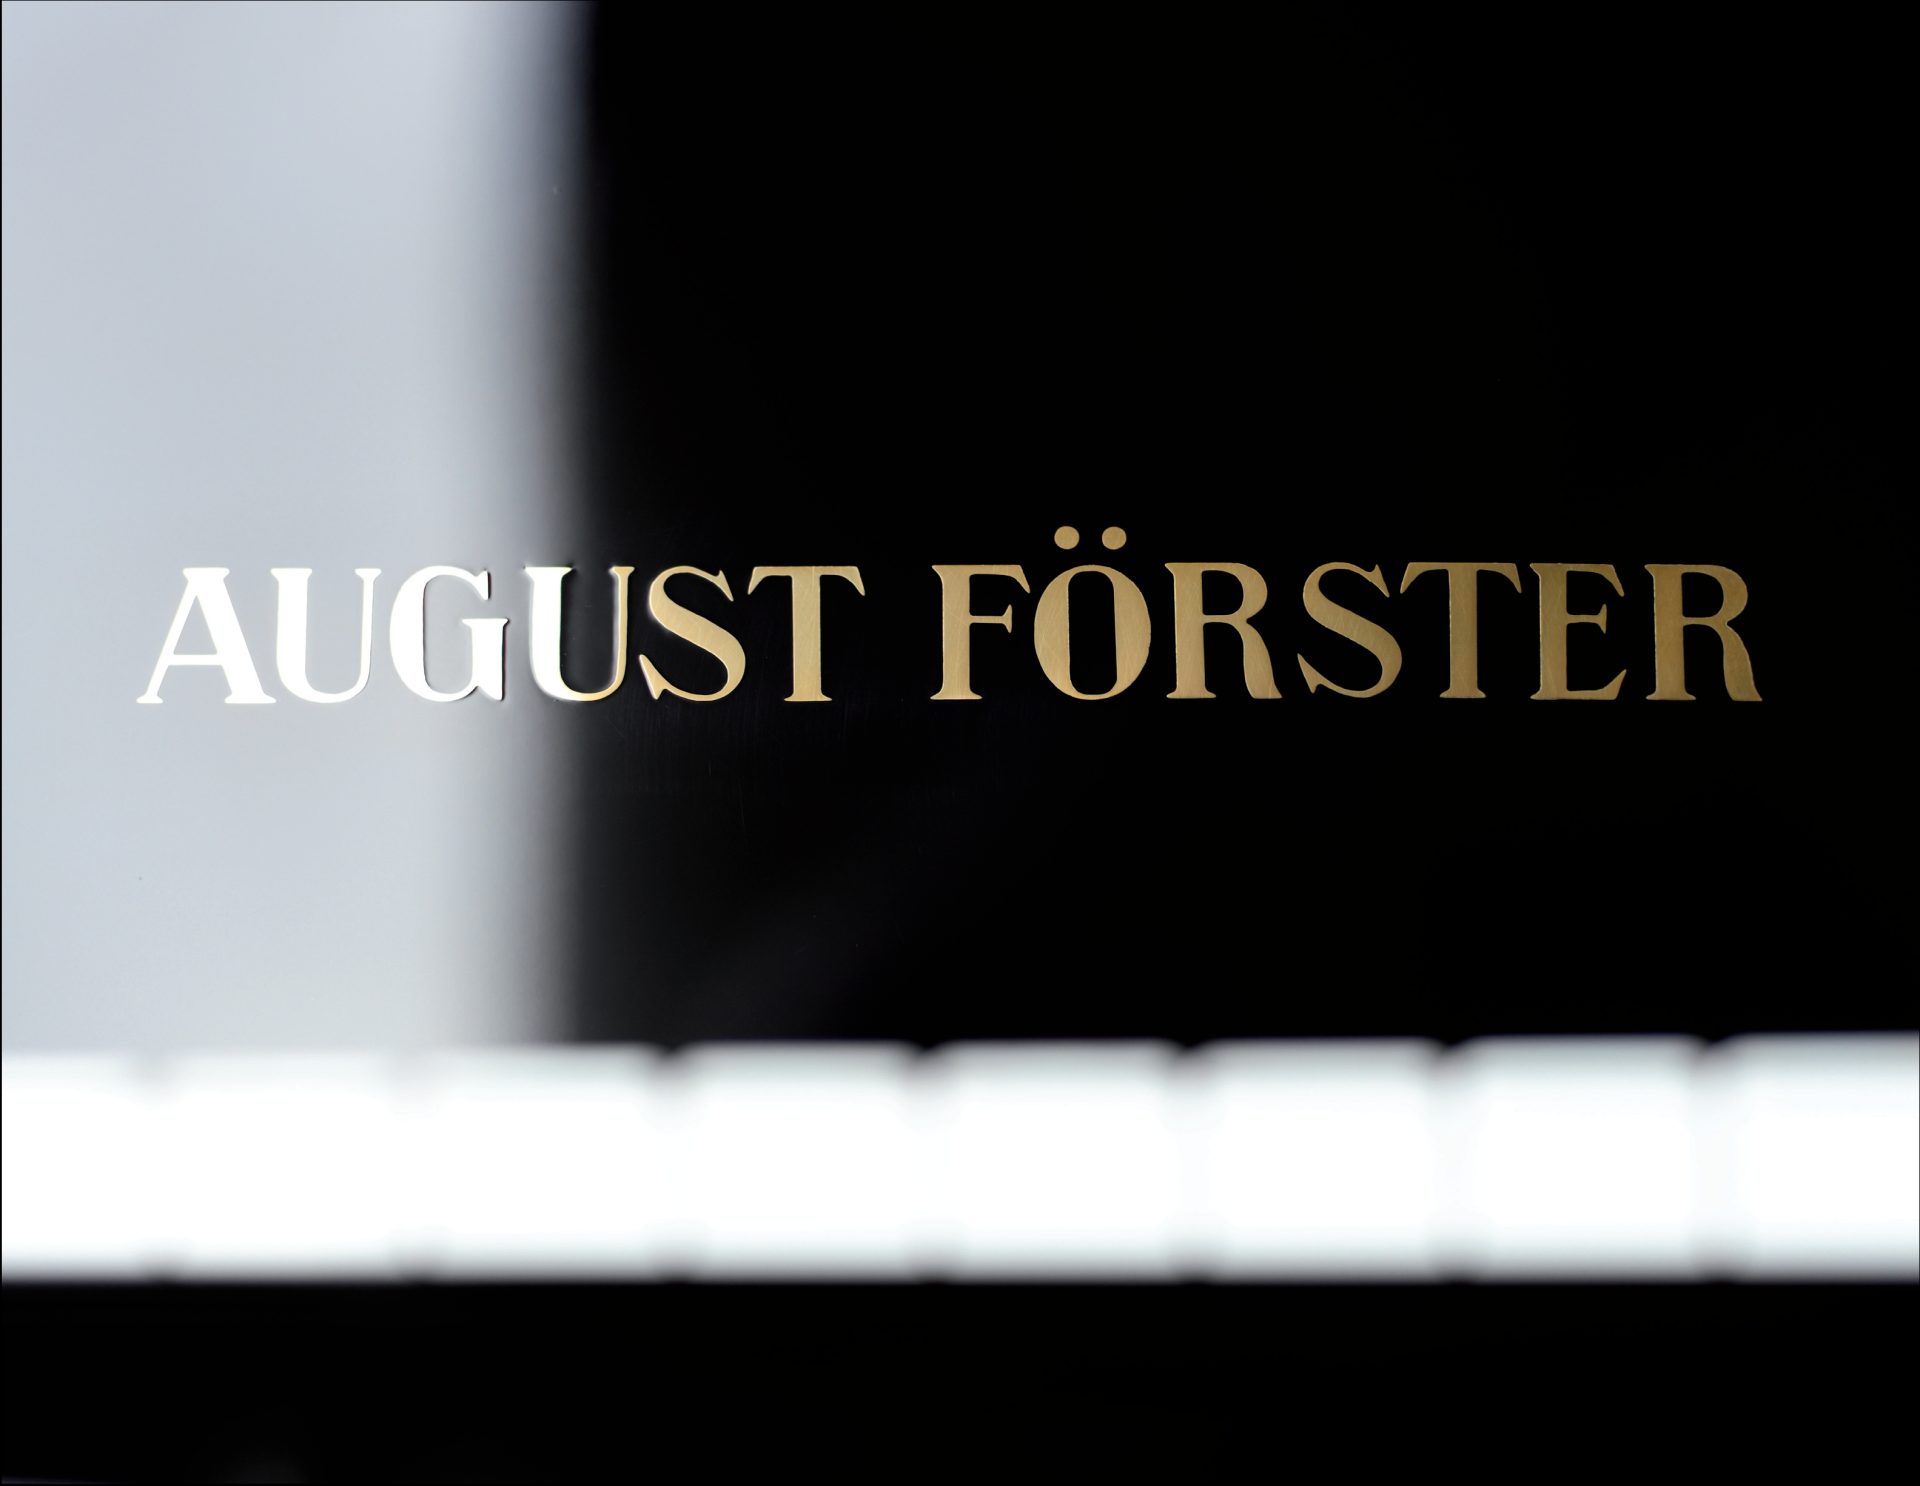 August Förster
116 E